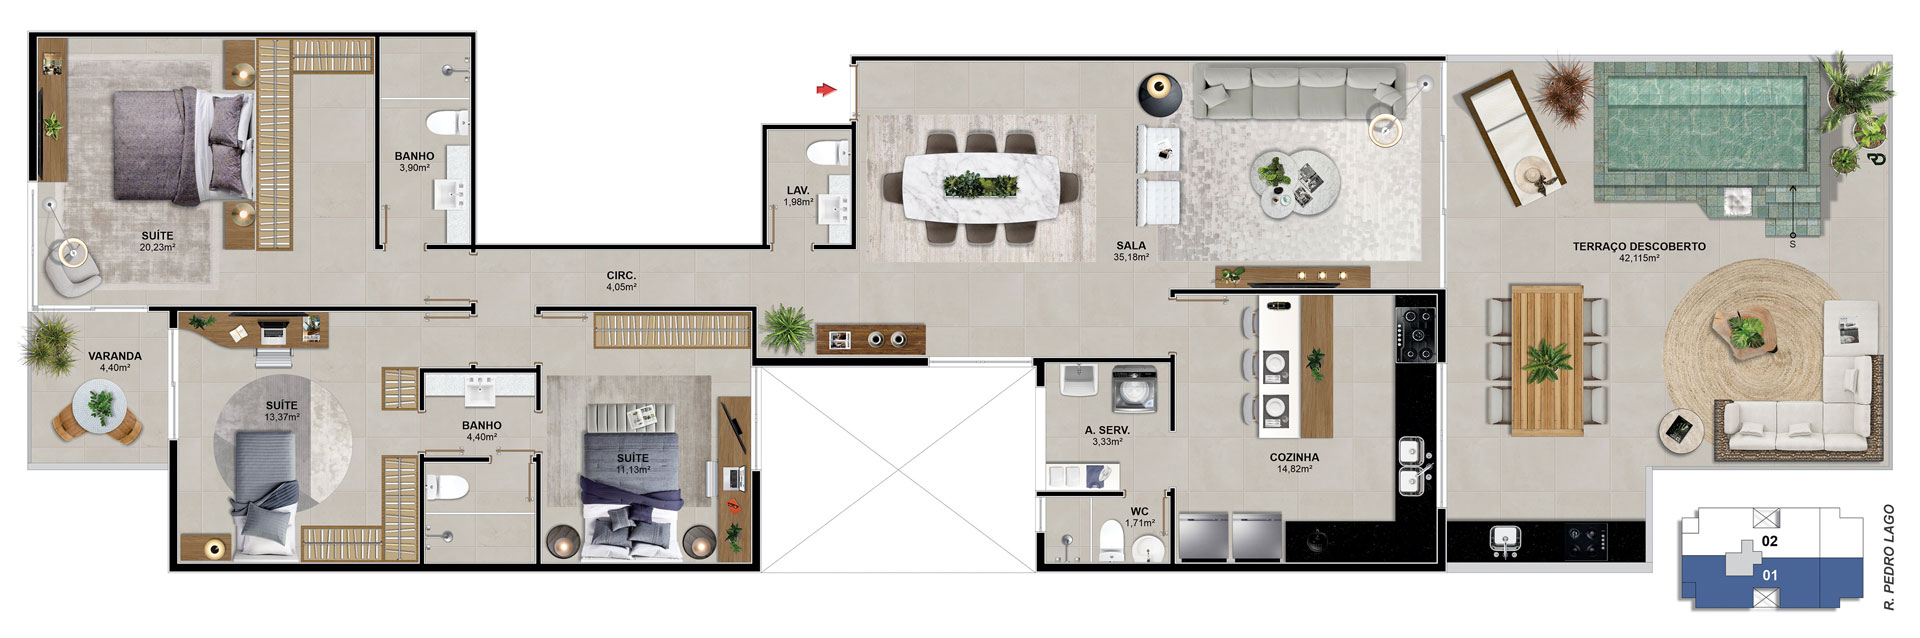 Cobertura 301 - 174,53 m²